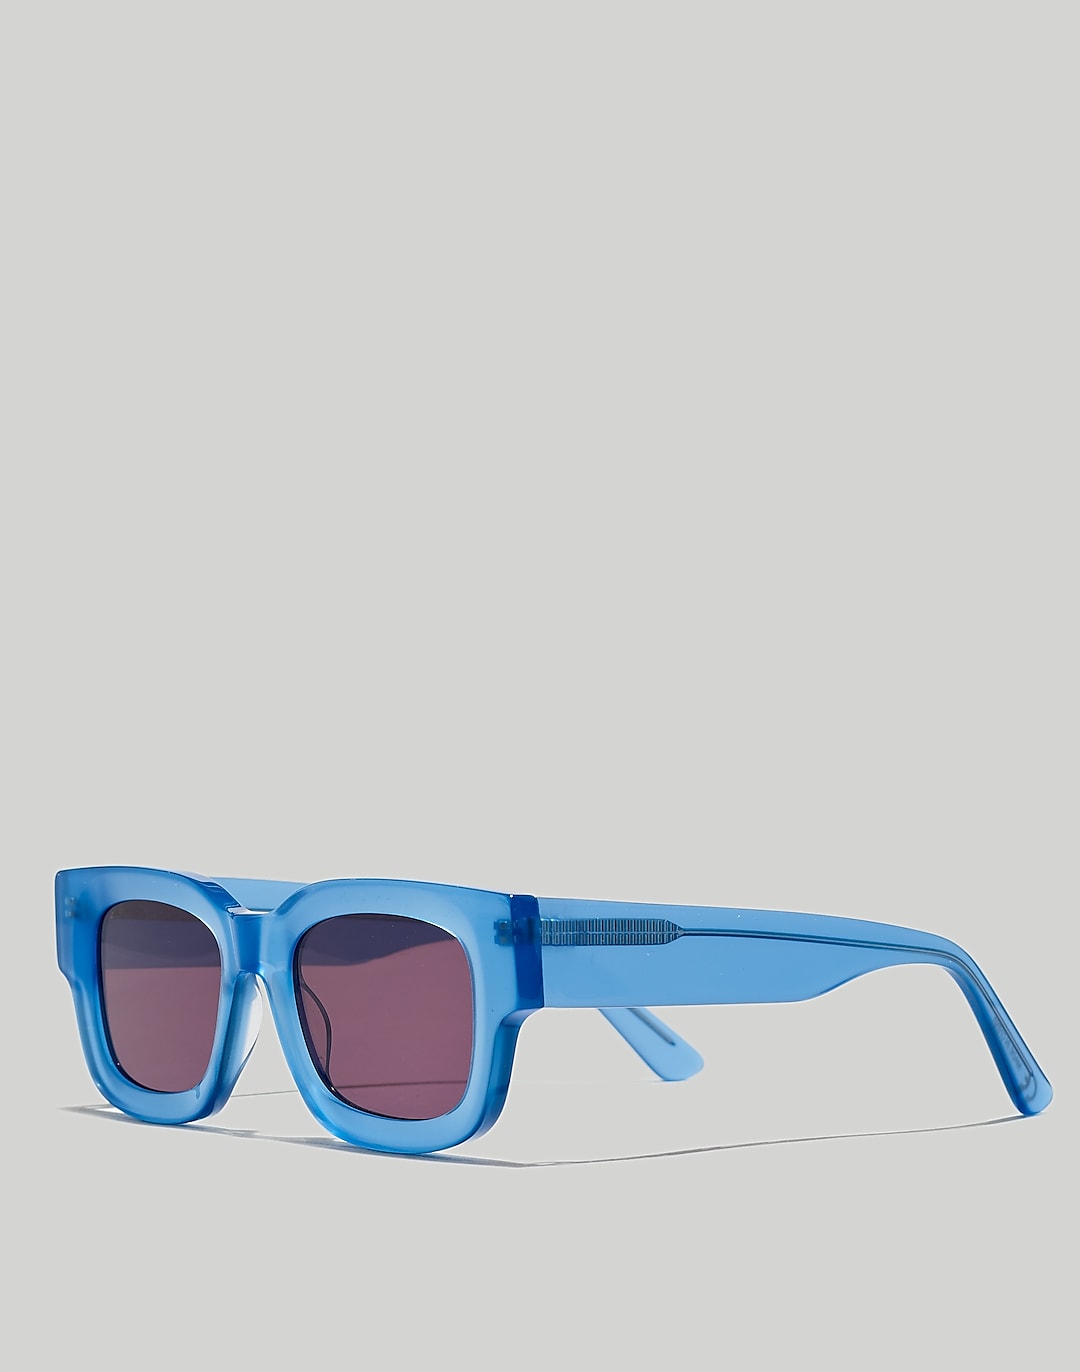 Safton Sunglasses | Madewell